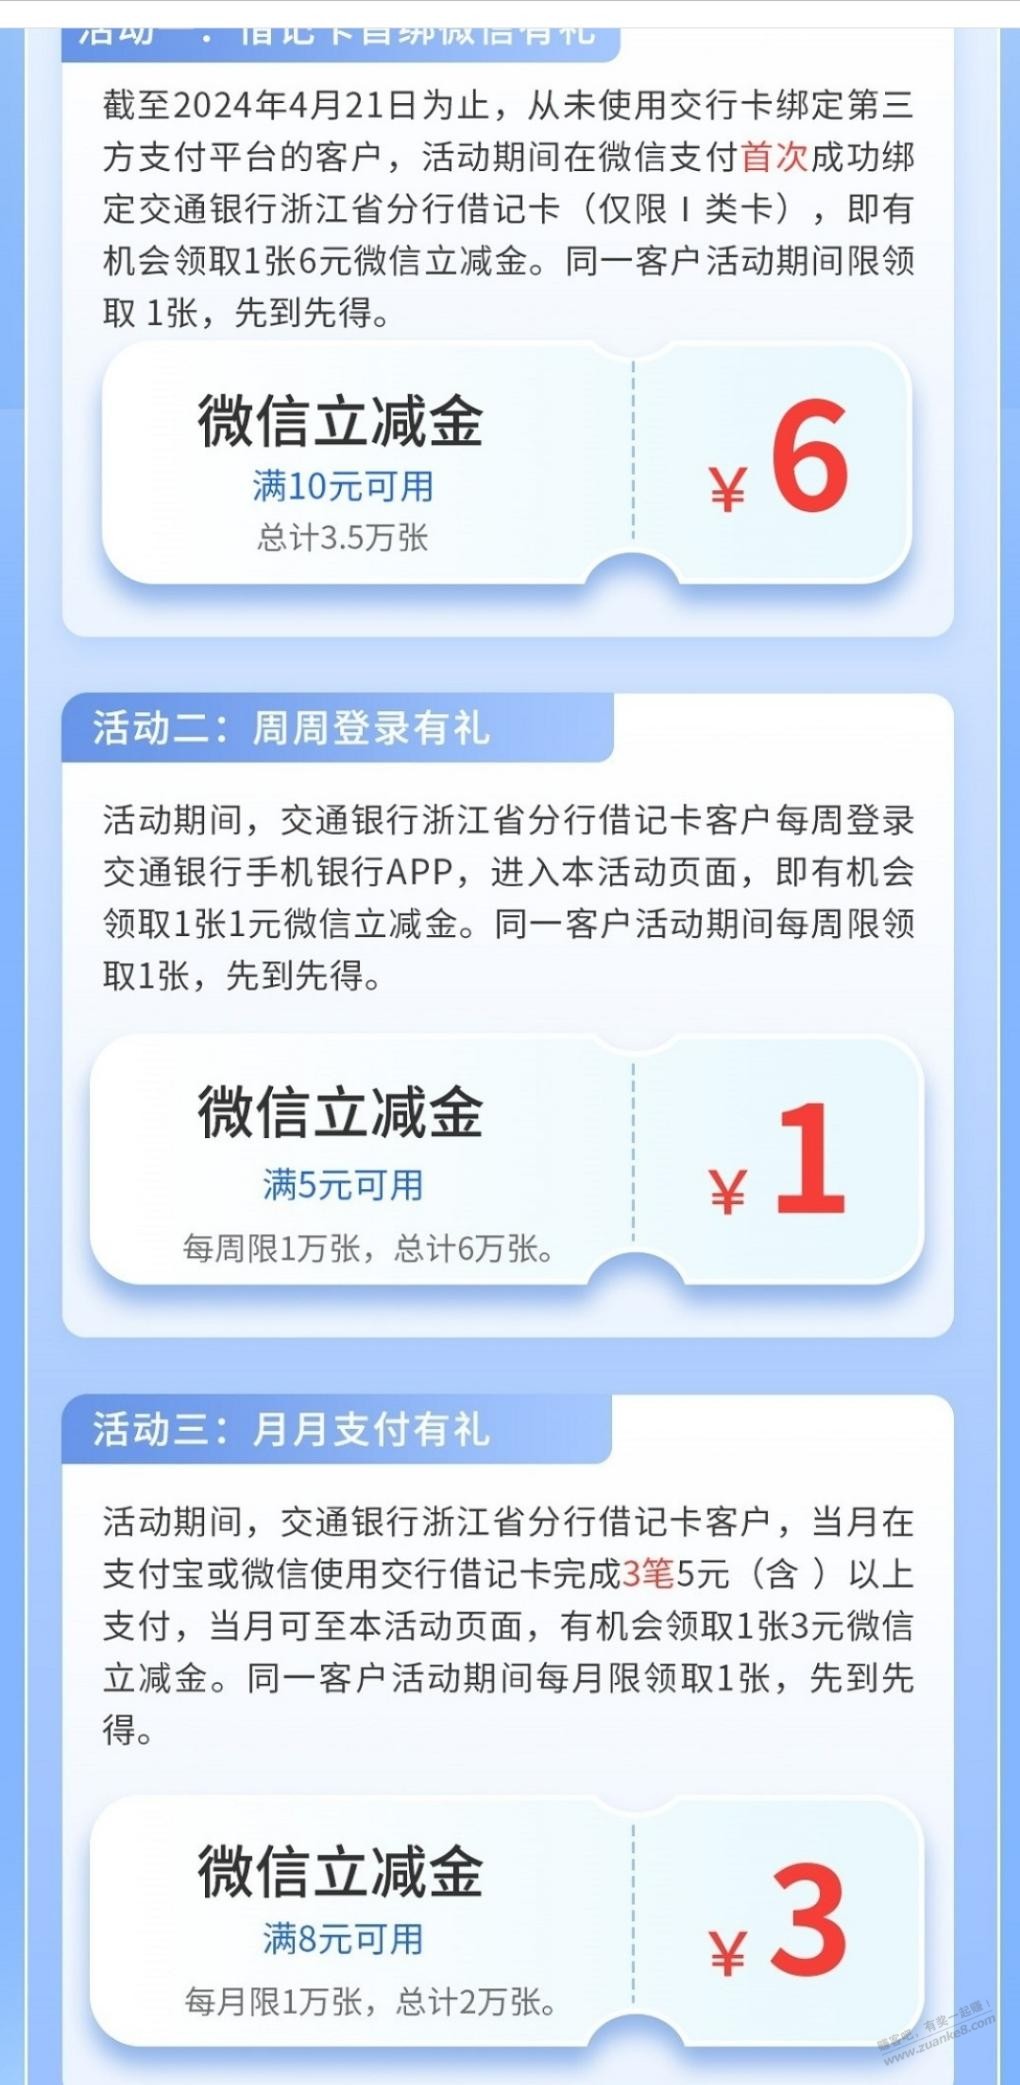 浙江地区交通银行卡10元大毛-惠小助(52huixz.com)